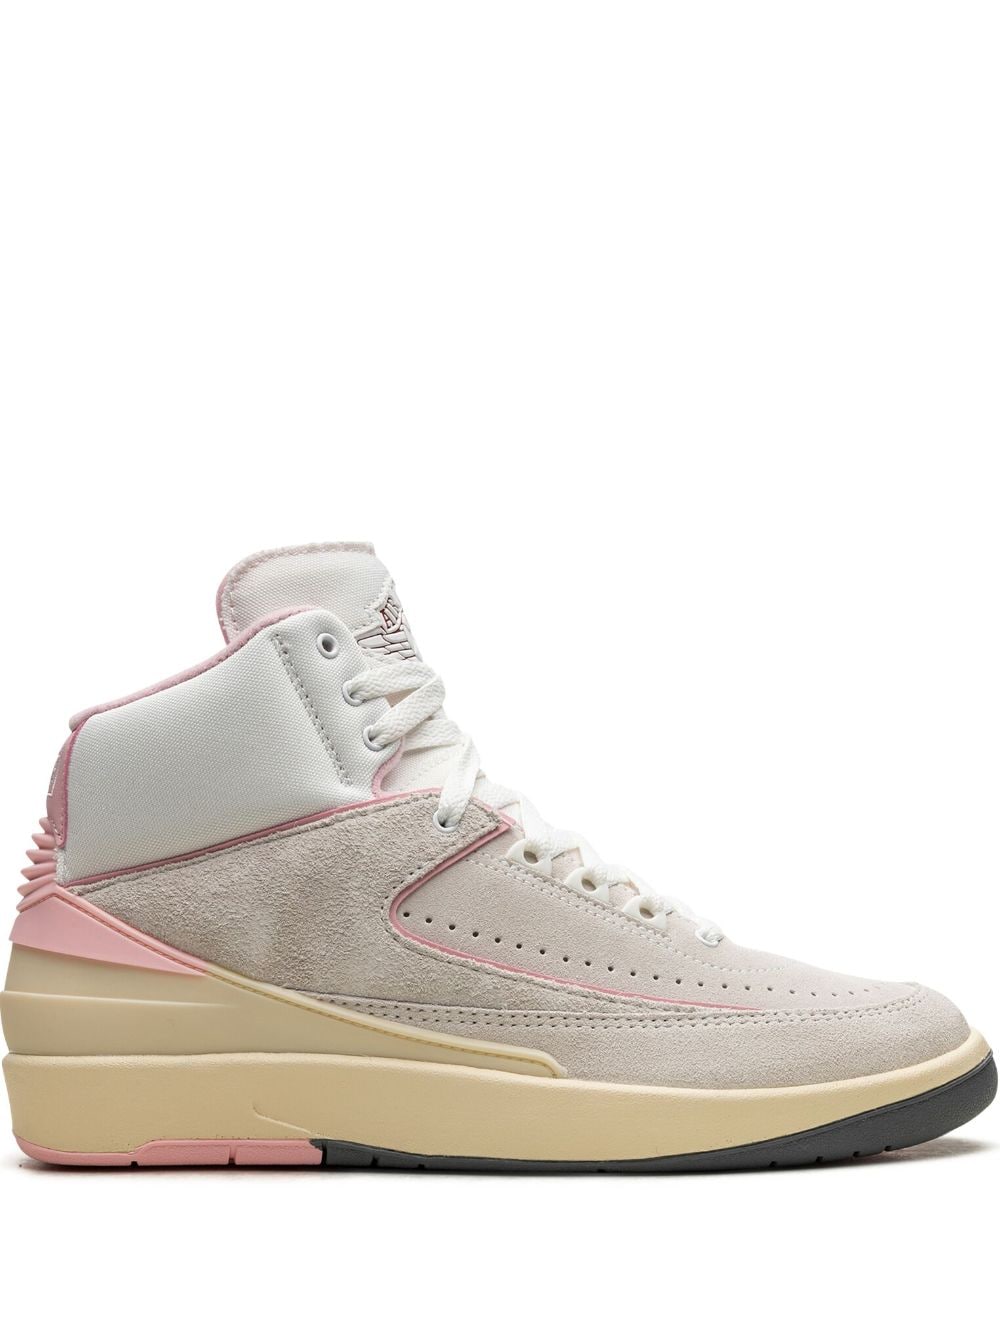 Jordan Air Jordan 2 "Soft Pink" Sneakers - Weiß von Jordan